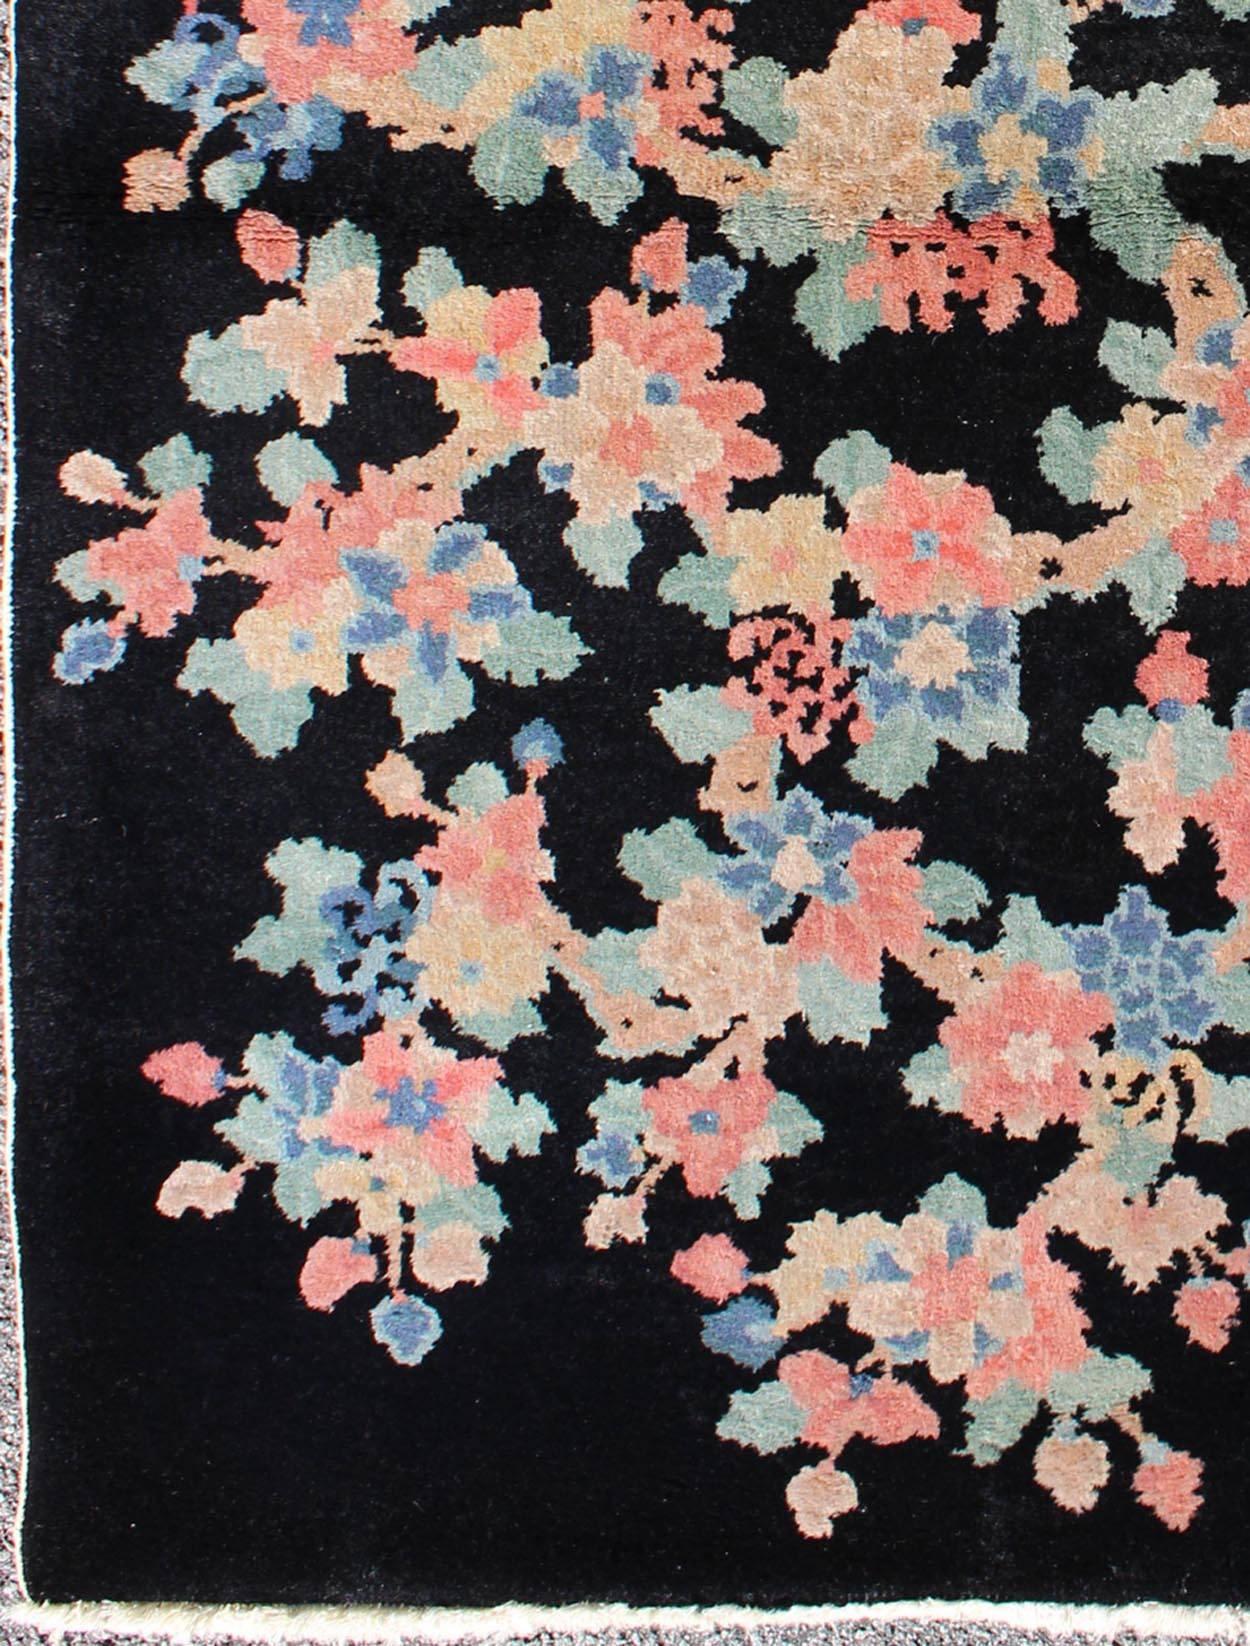 Art Deco Chinesischer Teppich mit schwarzem Hintergrund und Blumenbouquet in Pastellfarben, Teppich s12-0505, Herkunftsland / Typ: China / Art Deco, um 1920

Dieser antike chinesische Teppich, der in der ersten Hälfte des 20. Jahrhunderts (um